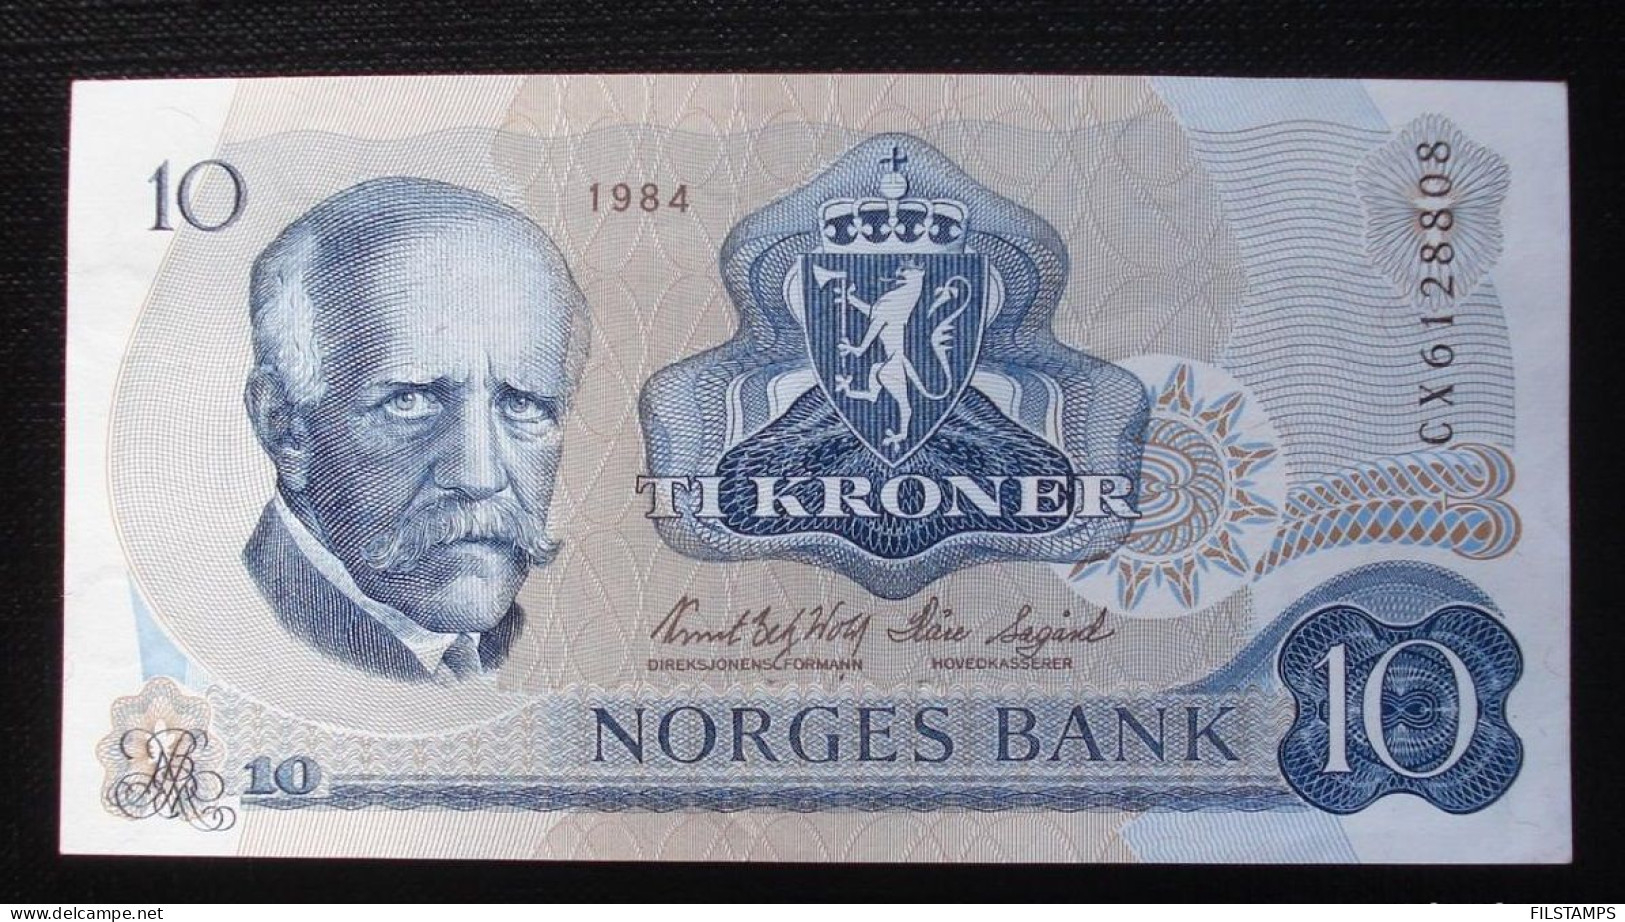 NORWAY 10 KRONER 1984 AUNCIRCULATED. BANKNOTE - Norway